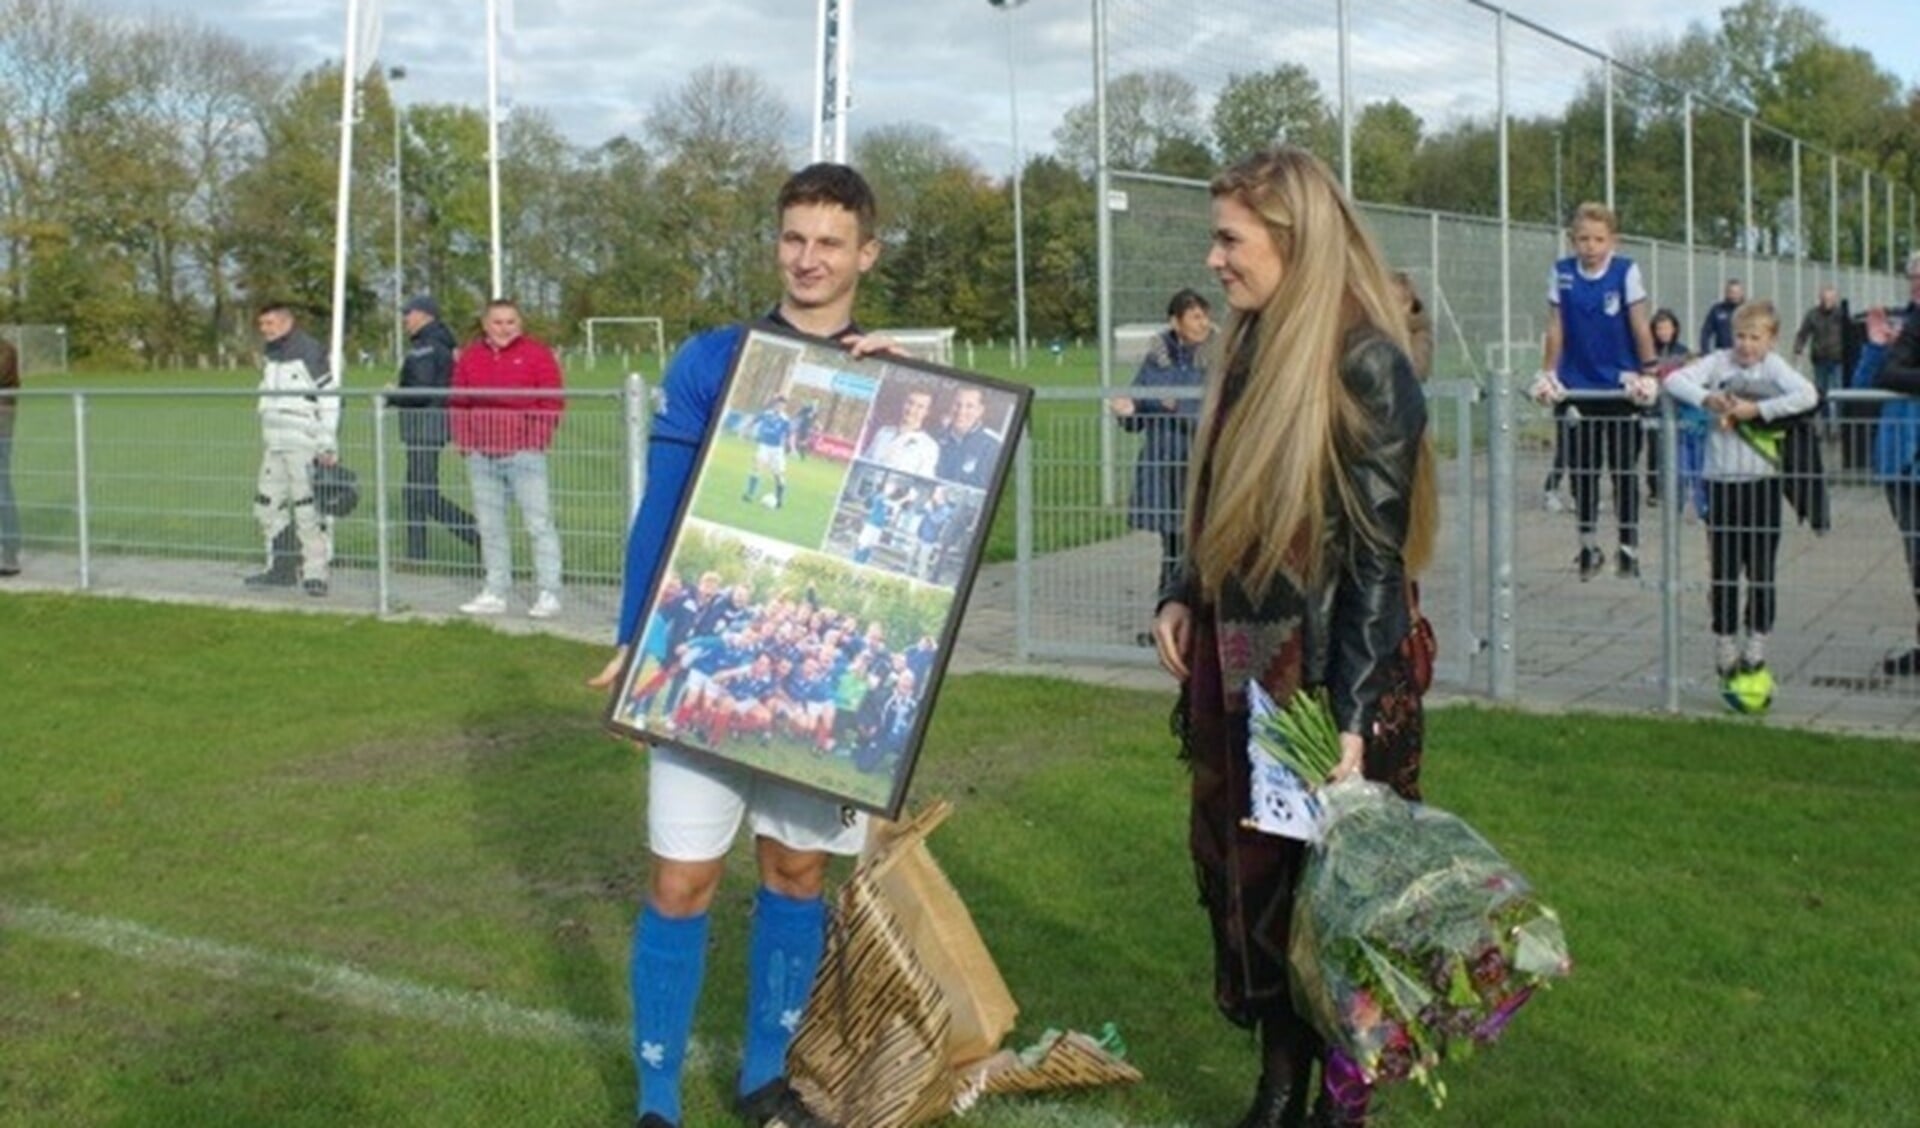 Jubilaris Tim Mackloet ontving een fotocollage. links van hem zijn vriendin Rianne van Meurs.